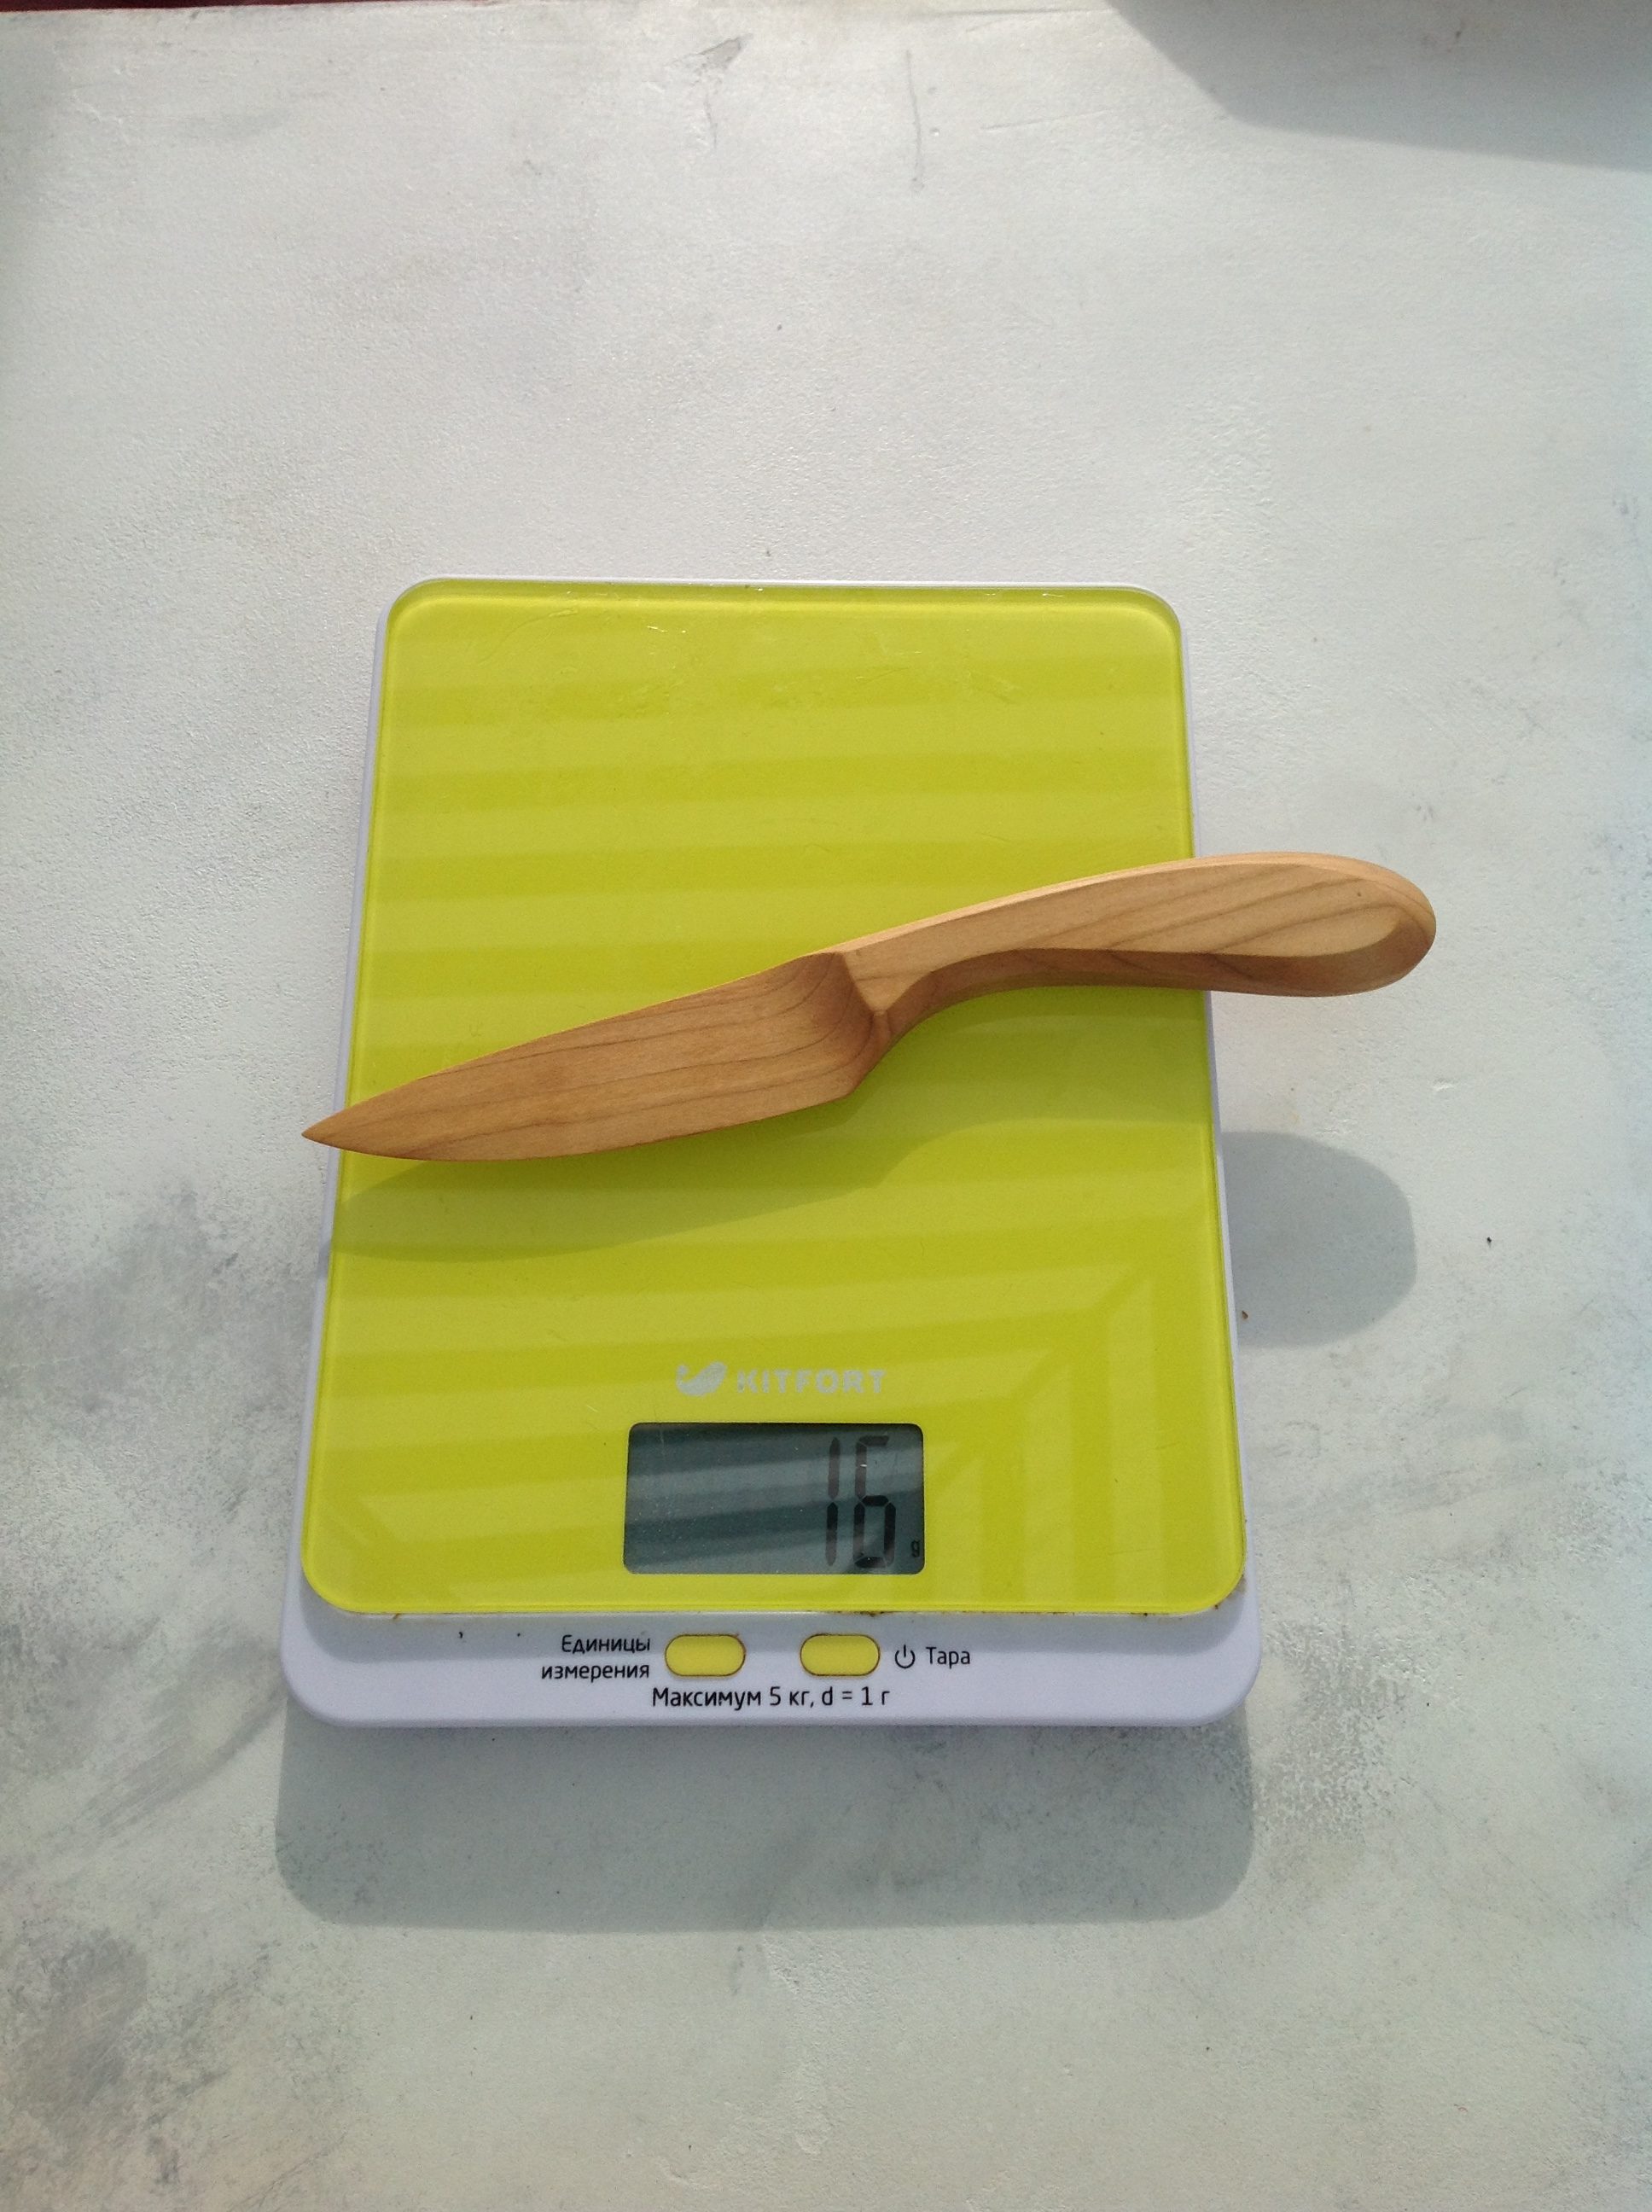 Сколько весит сувенирный деревянный нож средний?